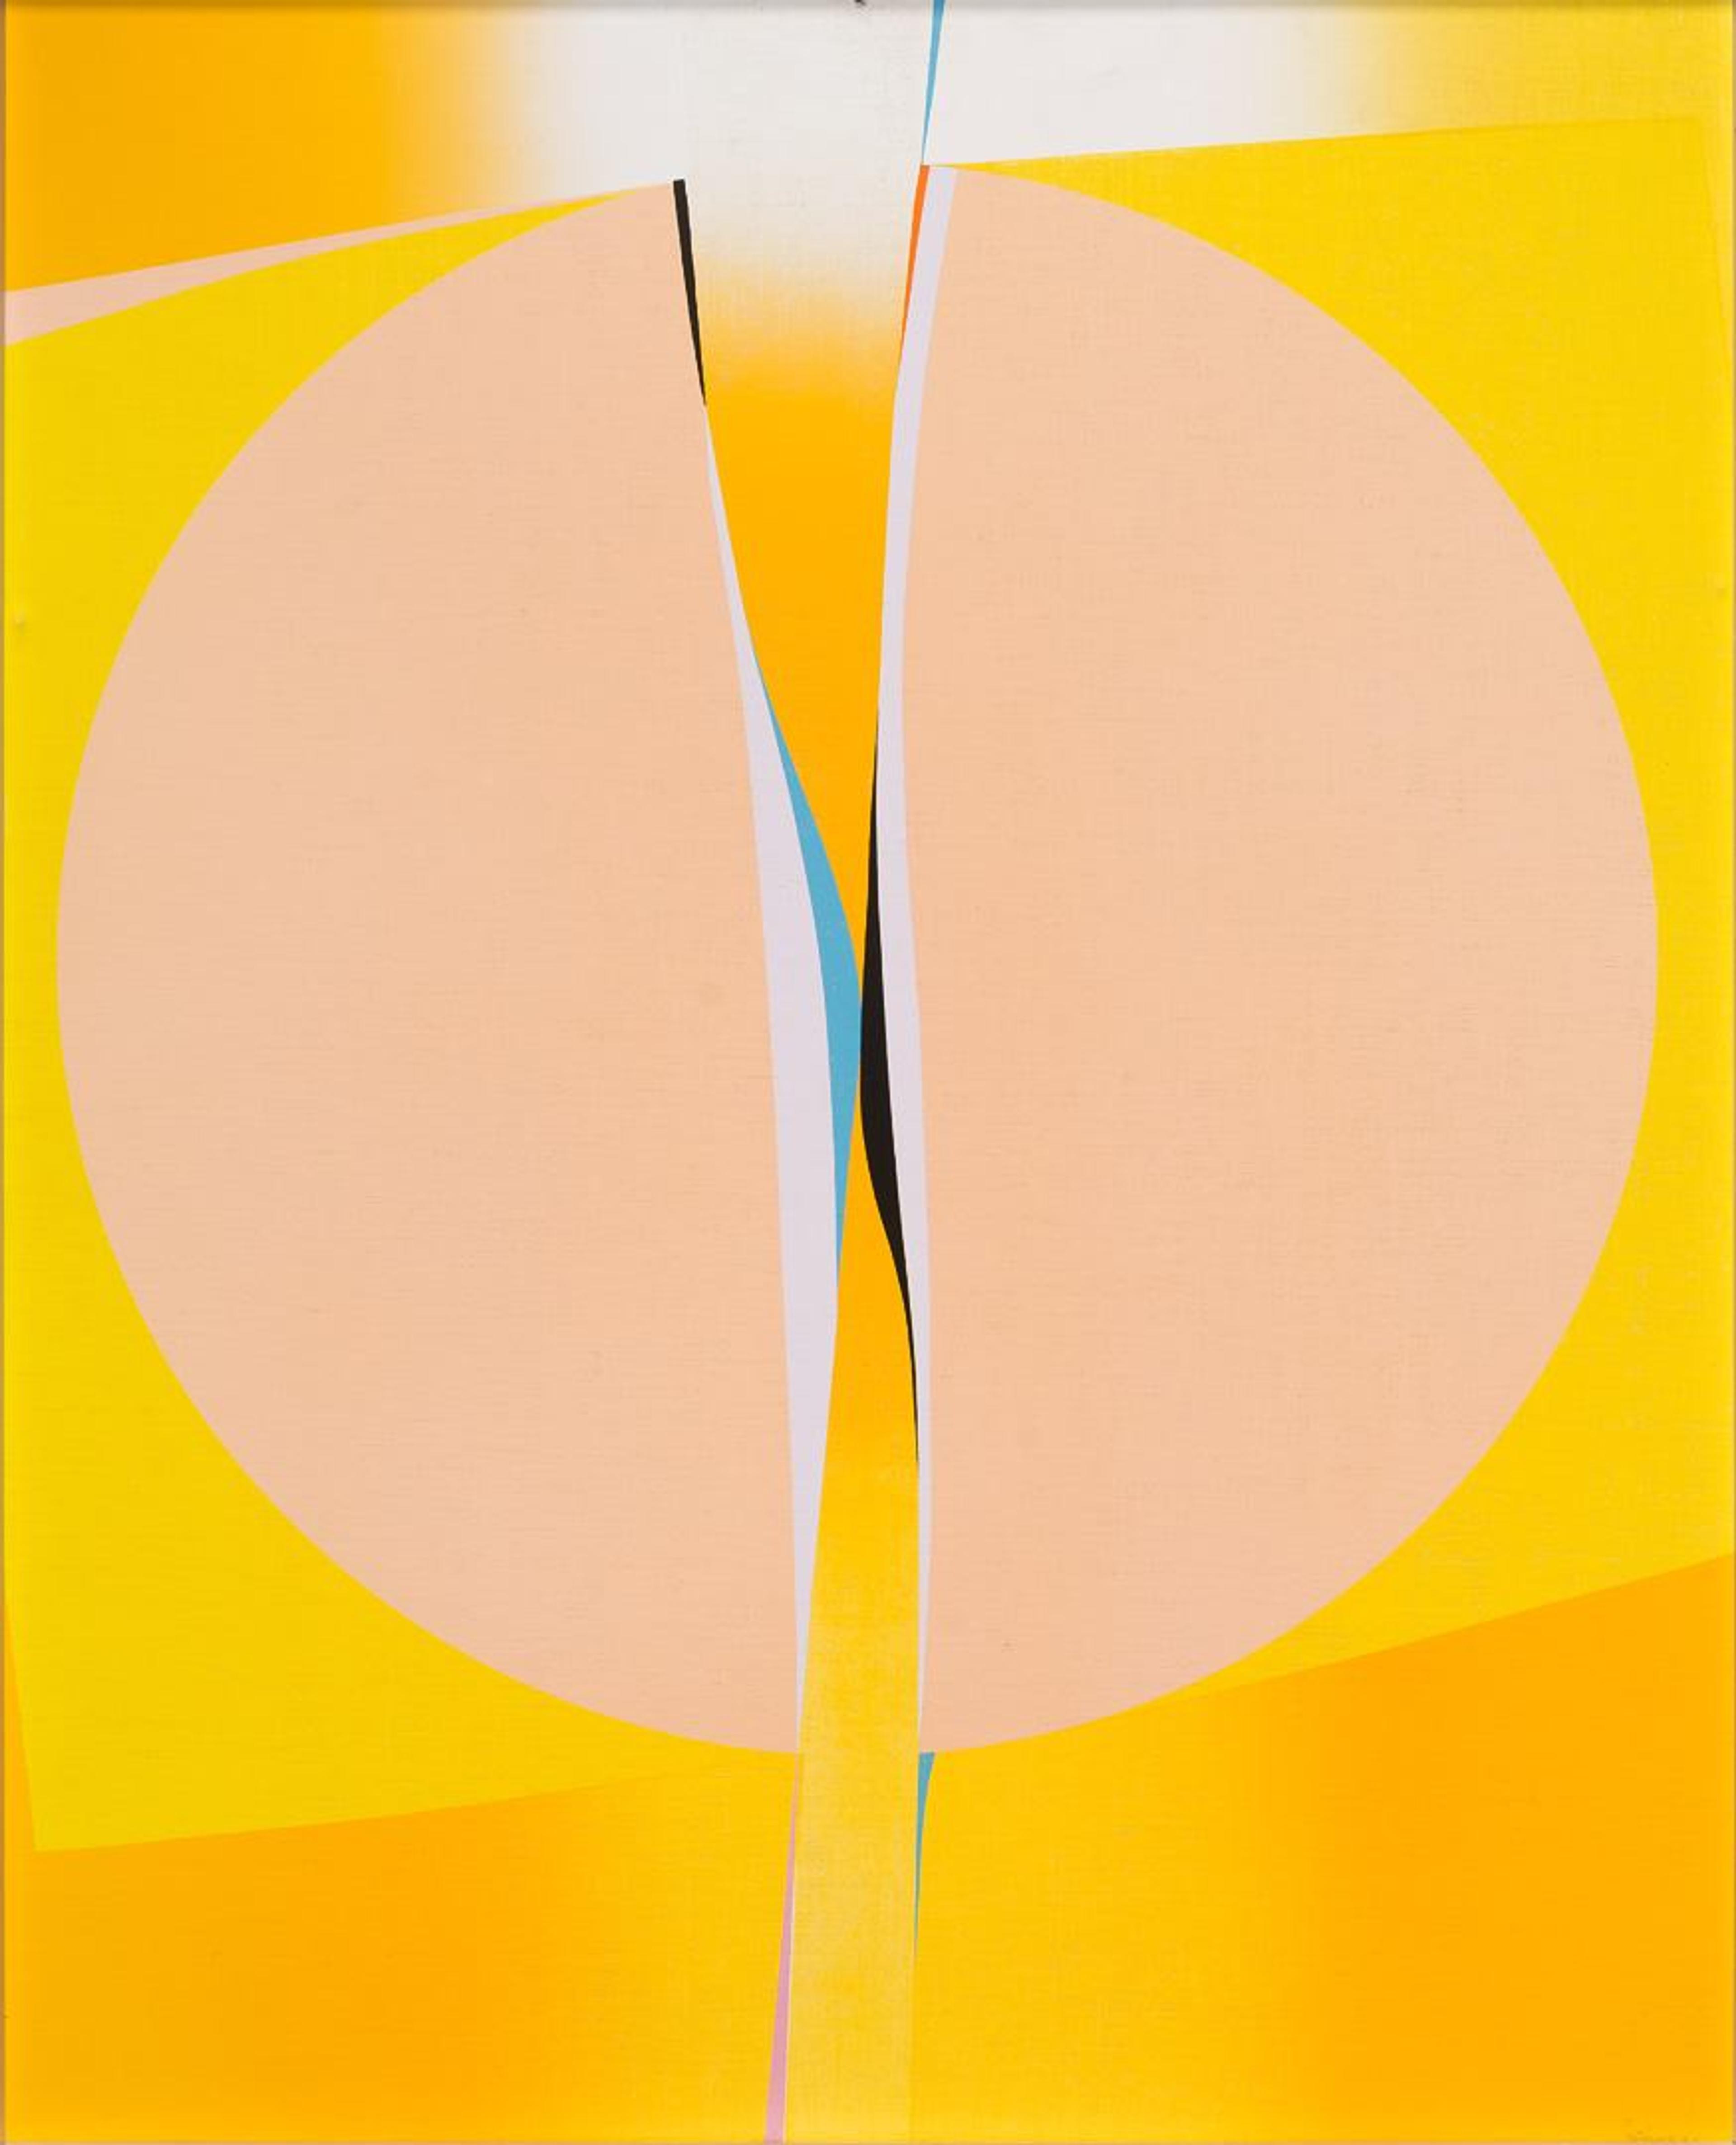 Et abstrakt maleri i gule farger, dominert av en rund form